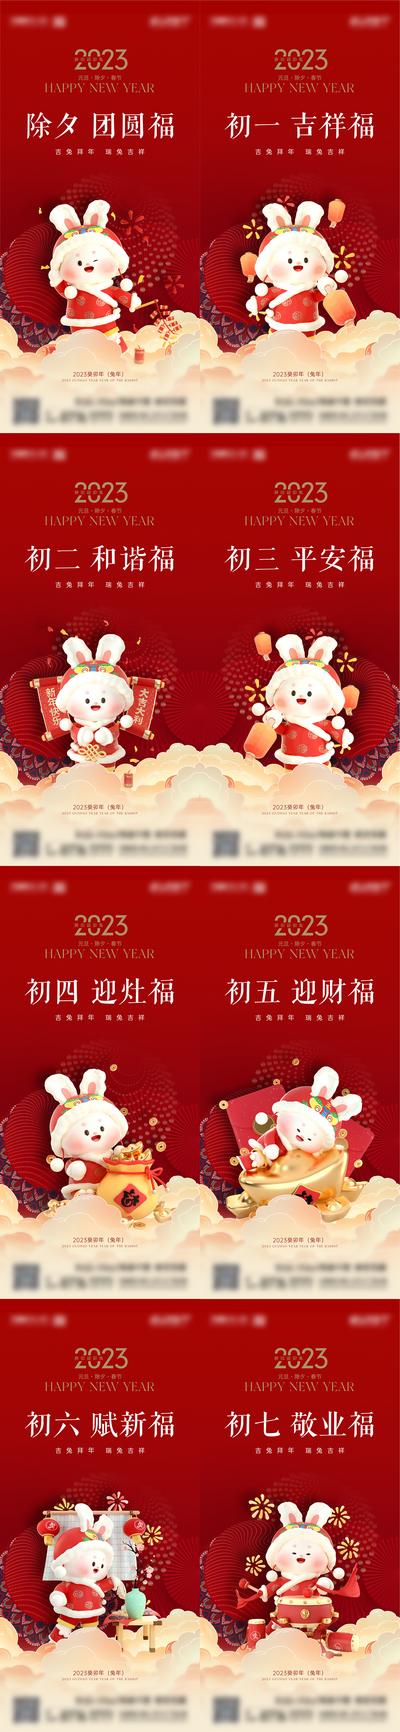 南门网 海报 中国传统节日 春节 卡通 2023 新年 兔年 除夕 初一 初七 拜年 民俗